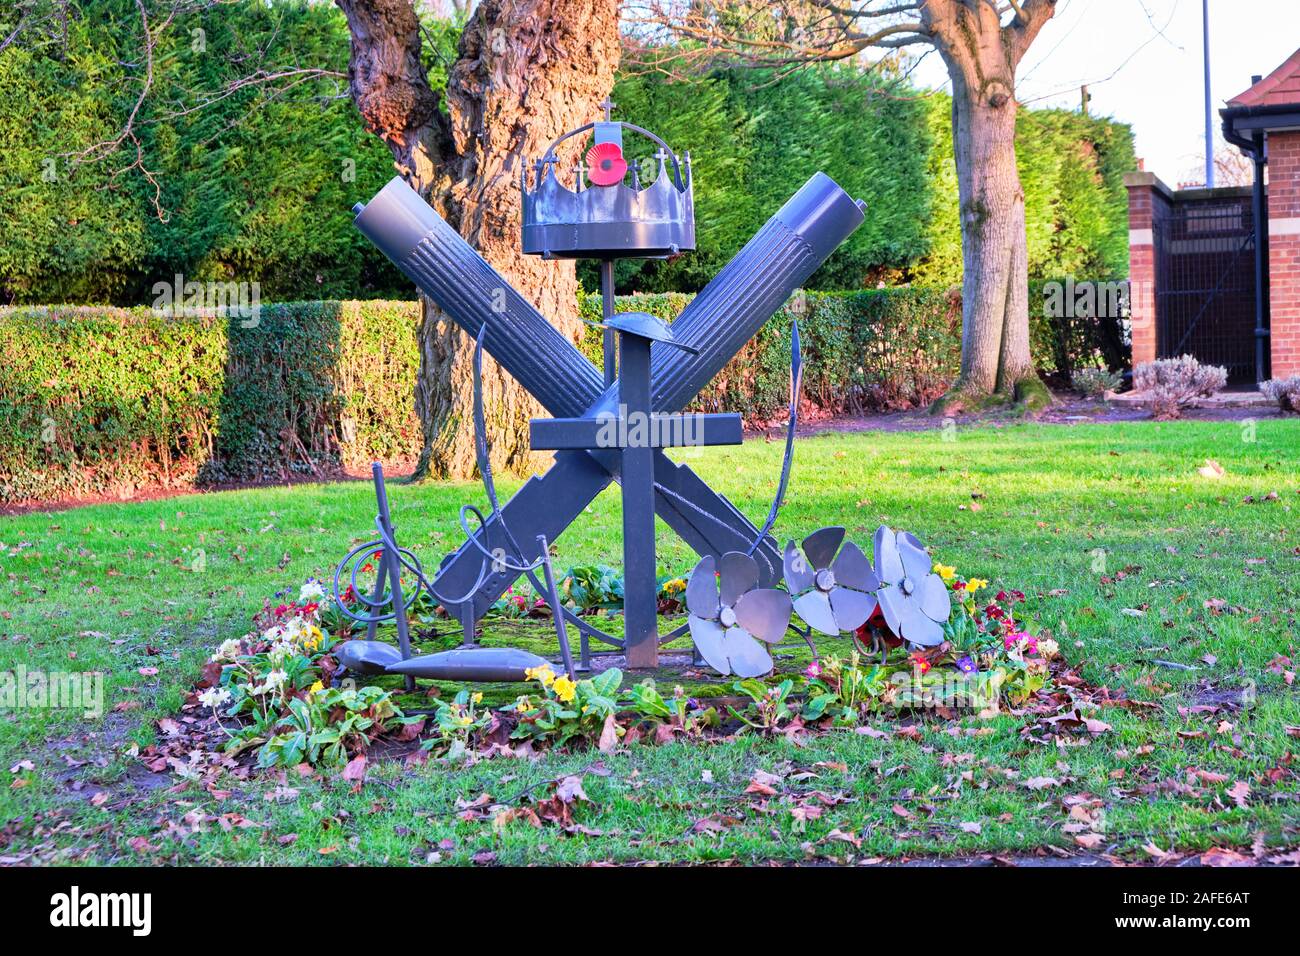 La prima guerra mondiale Memoriale della mitragliatrice Corps in Wyndham Park, Grantham, Lincolnshire consistente di attraversata Vickers mitragliatrici corona metallica papaveri Foto Stock